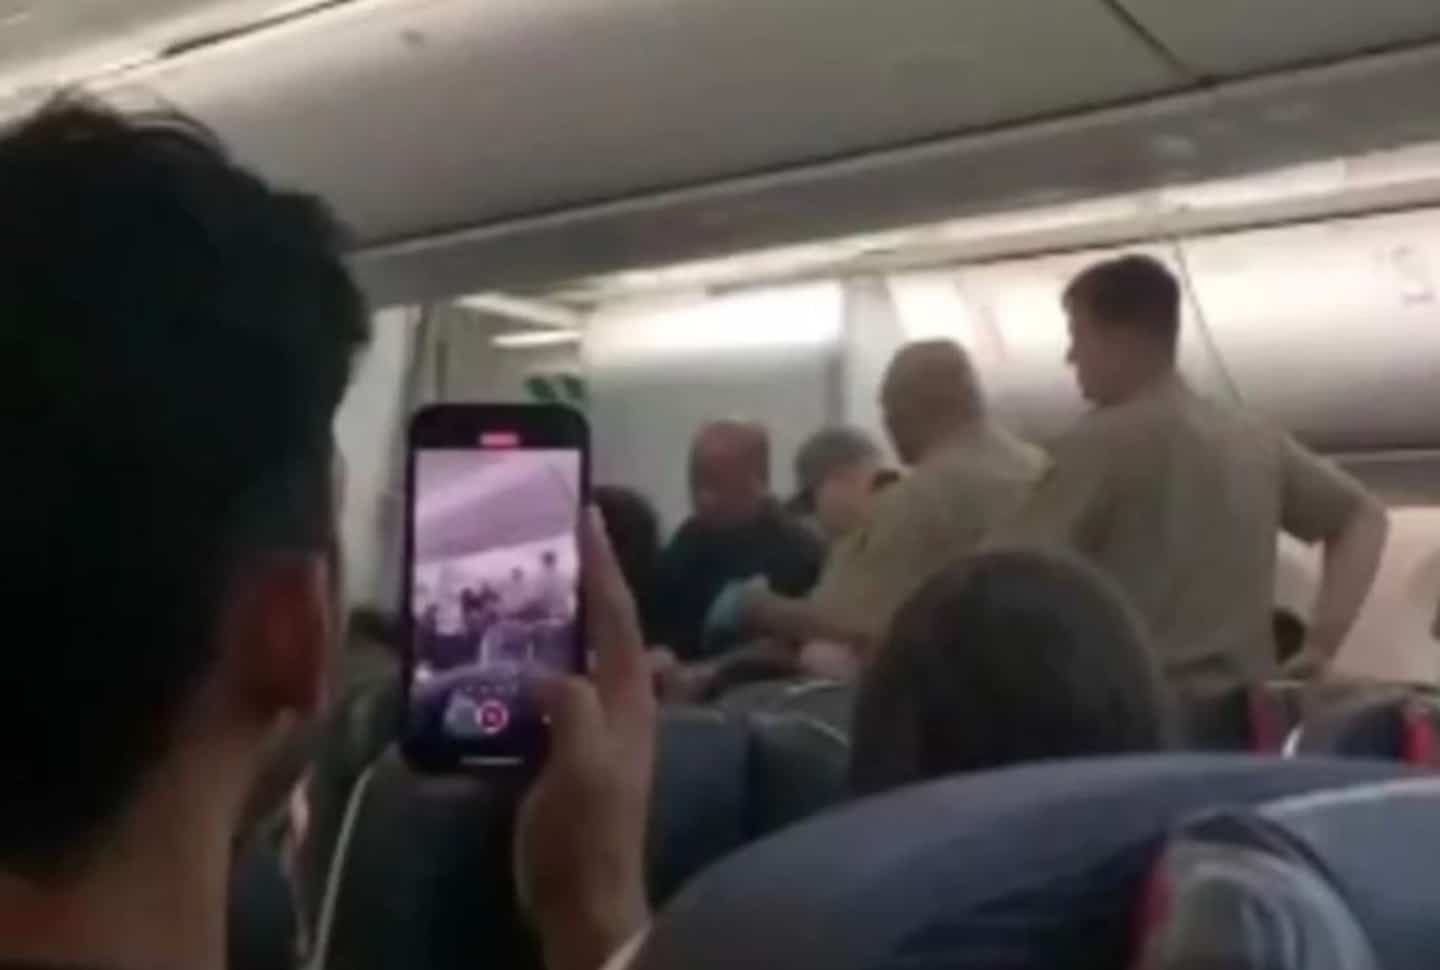 A passenger allegedly strangled an Air Canada flight attendant in mid-flight